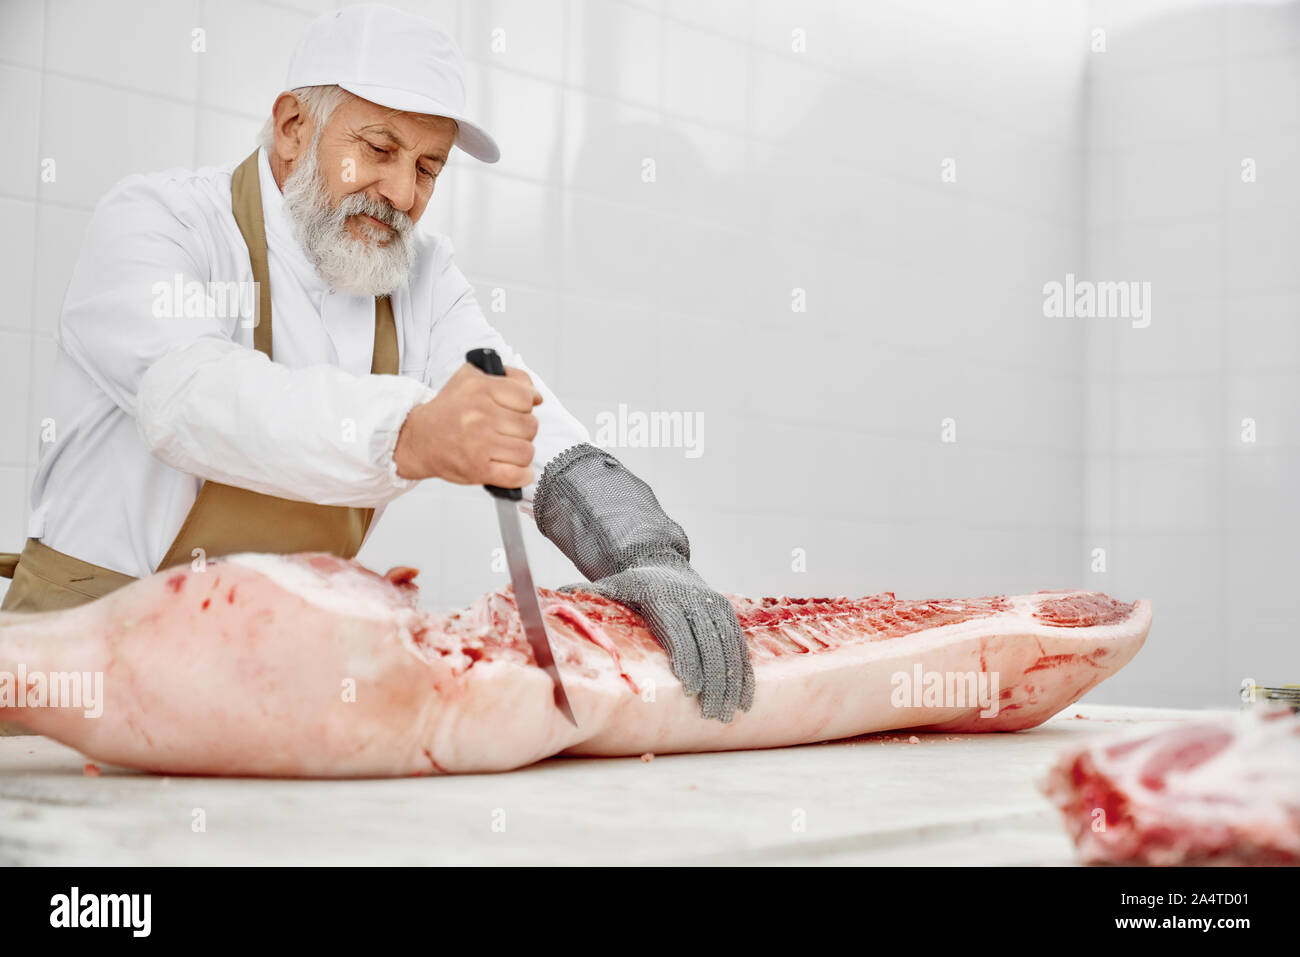 Ältere Metzger schneiden Schweinefleisch Karkasse mit Messer auf den Tisch. Stattliche Arbeiter mit Bart in weißer Uniform, weiße Kappe, braun Schürze und spezielle Handschuhe arbeiten an Manufaktur mit rohem Fleisch. Stockfoto